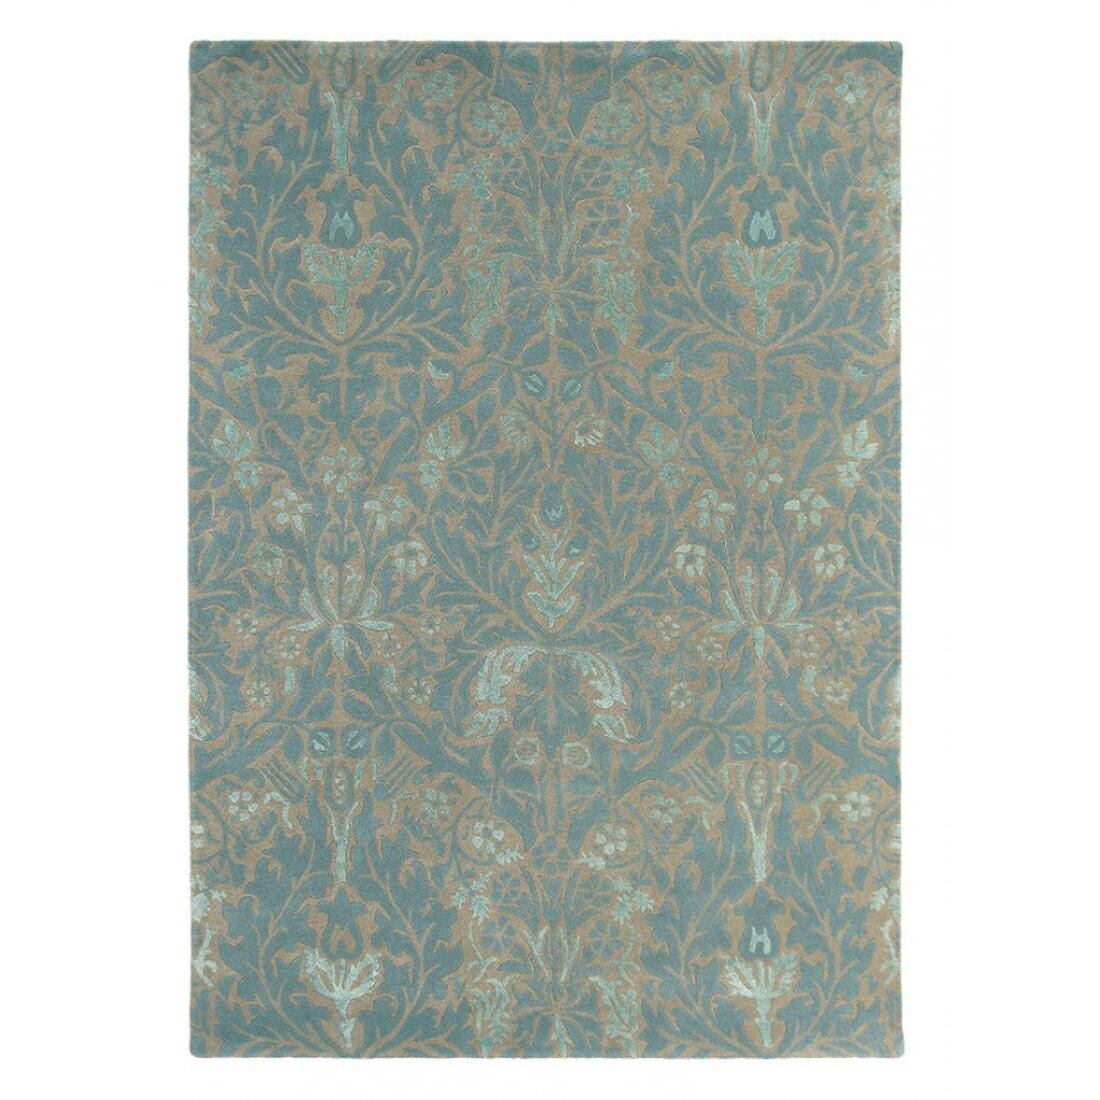 英國Morris&Co羊毛地毯 AUTUMN FLOWERS 27508  古典圖騰 經典優雅